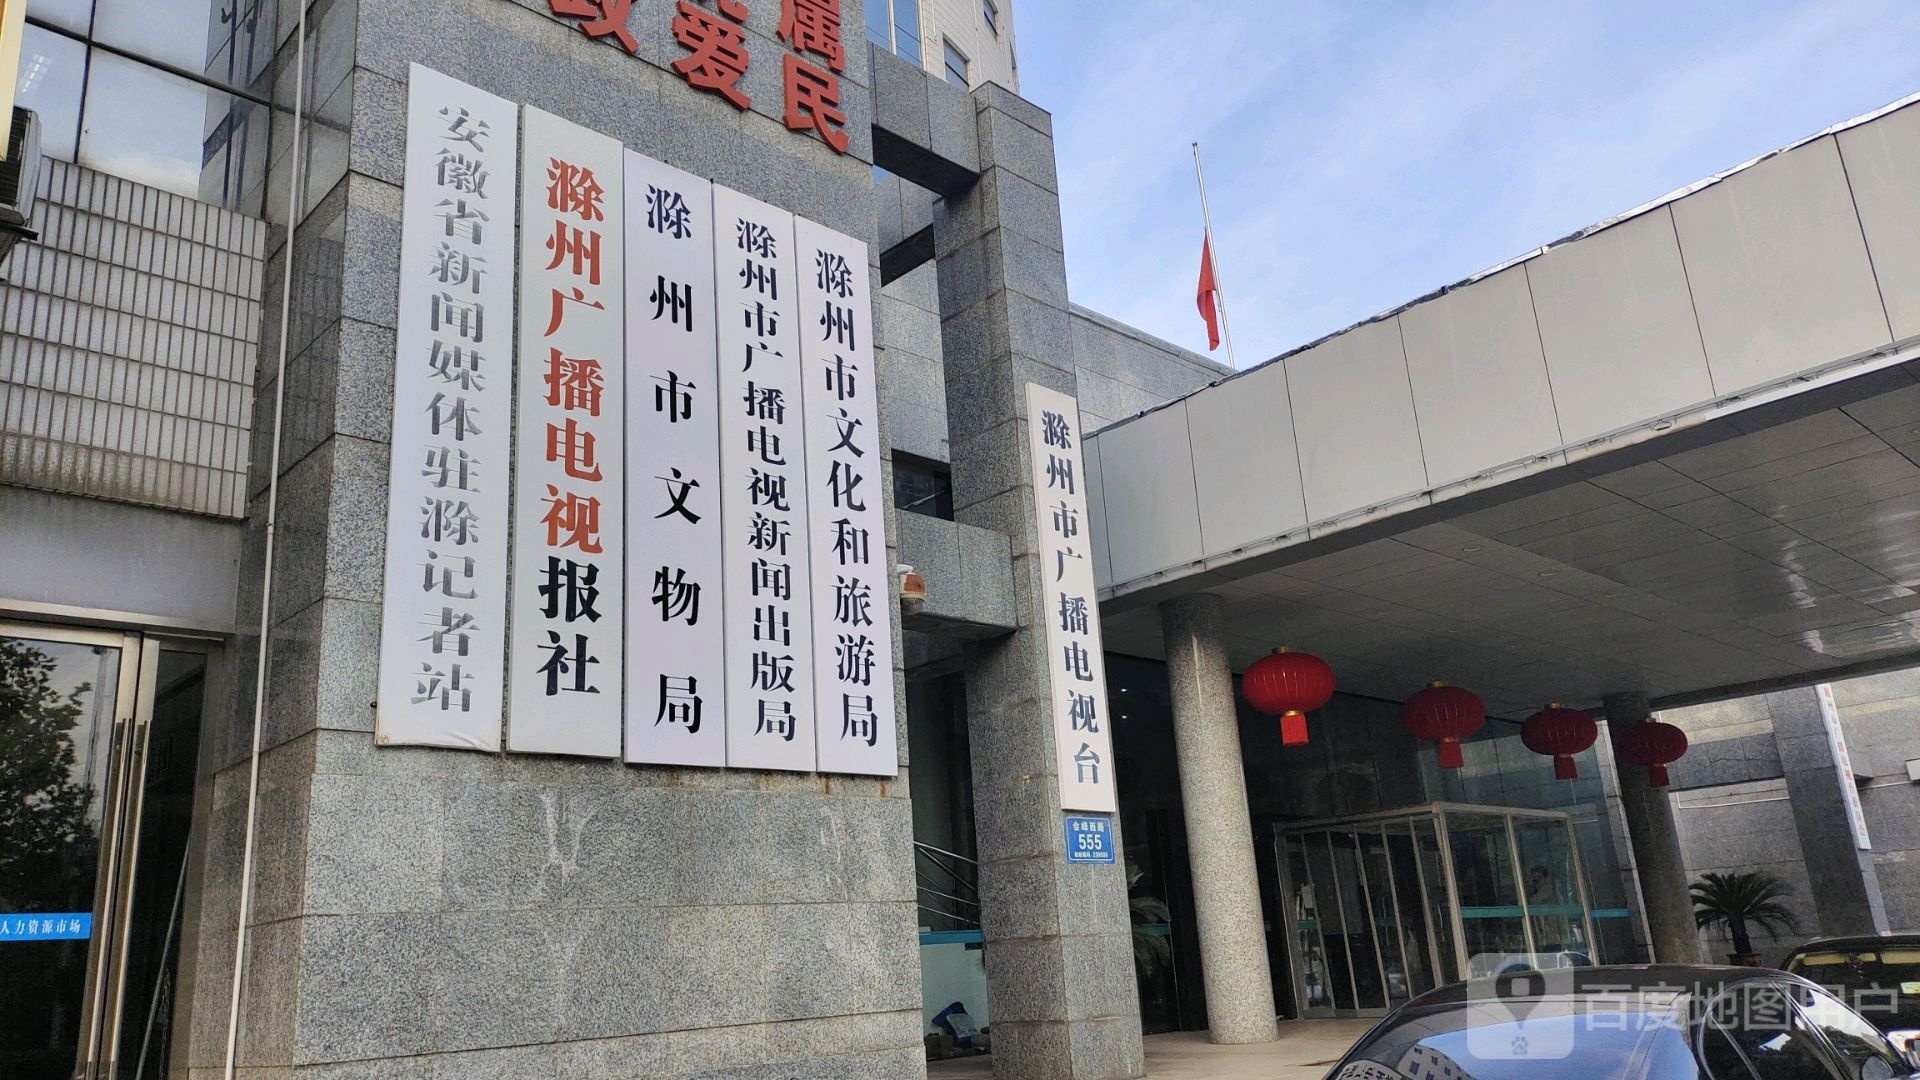 安徽省新闻媒体驻滁记者站